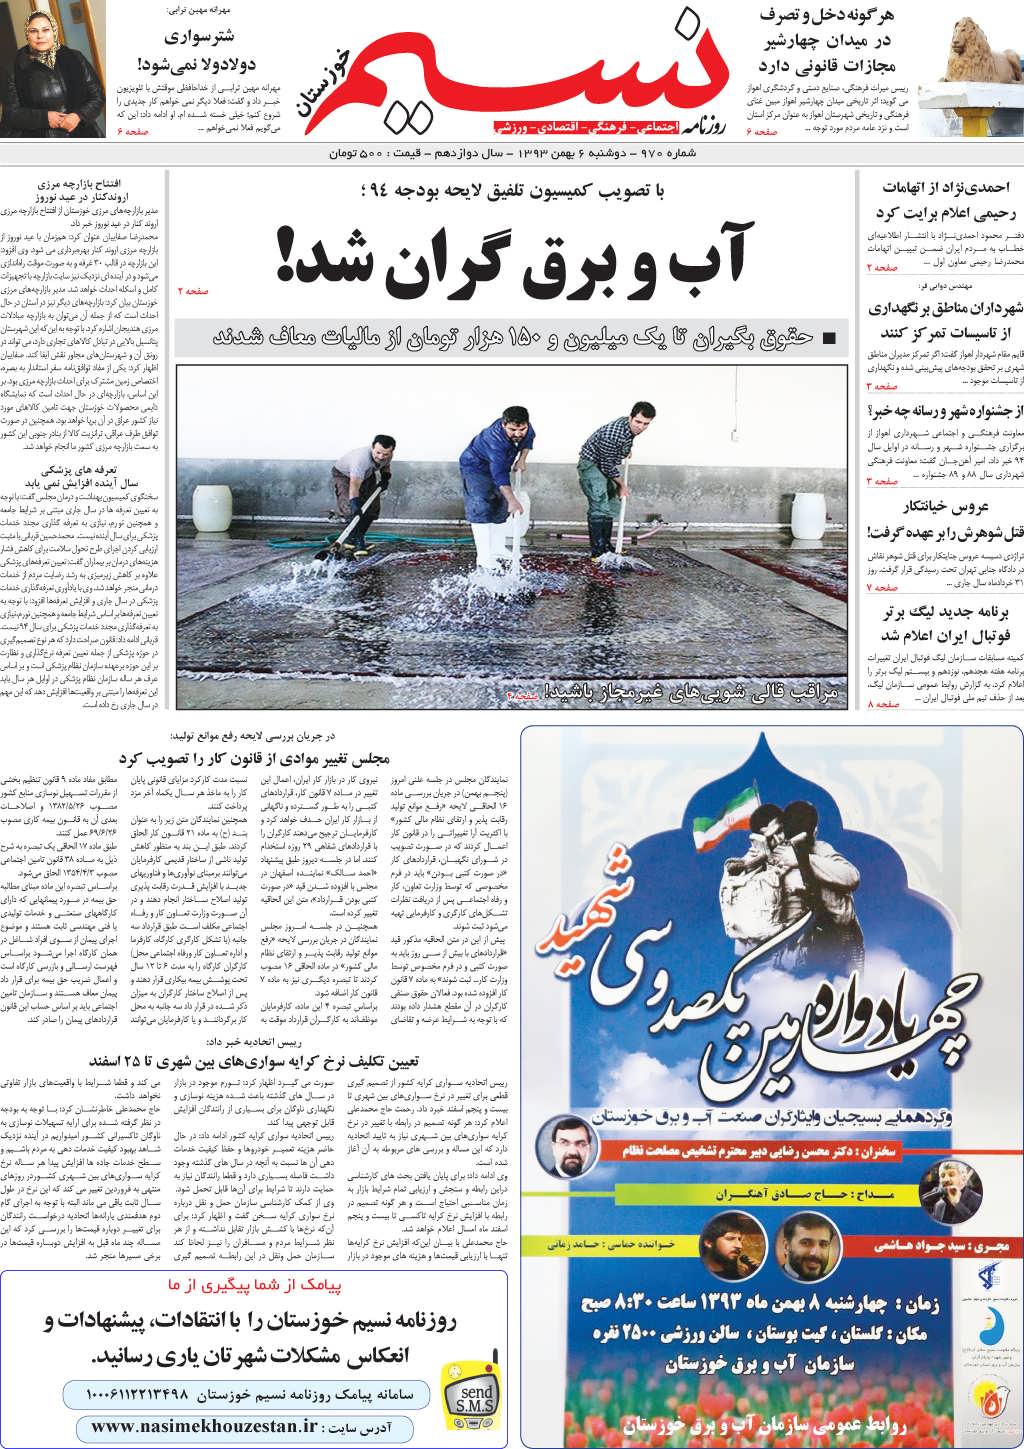 صفحه اصلی روزنامه نسیم شماره 970